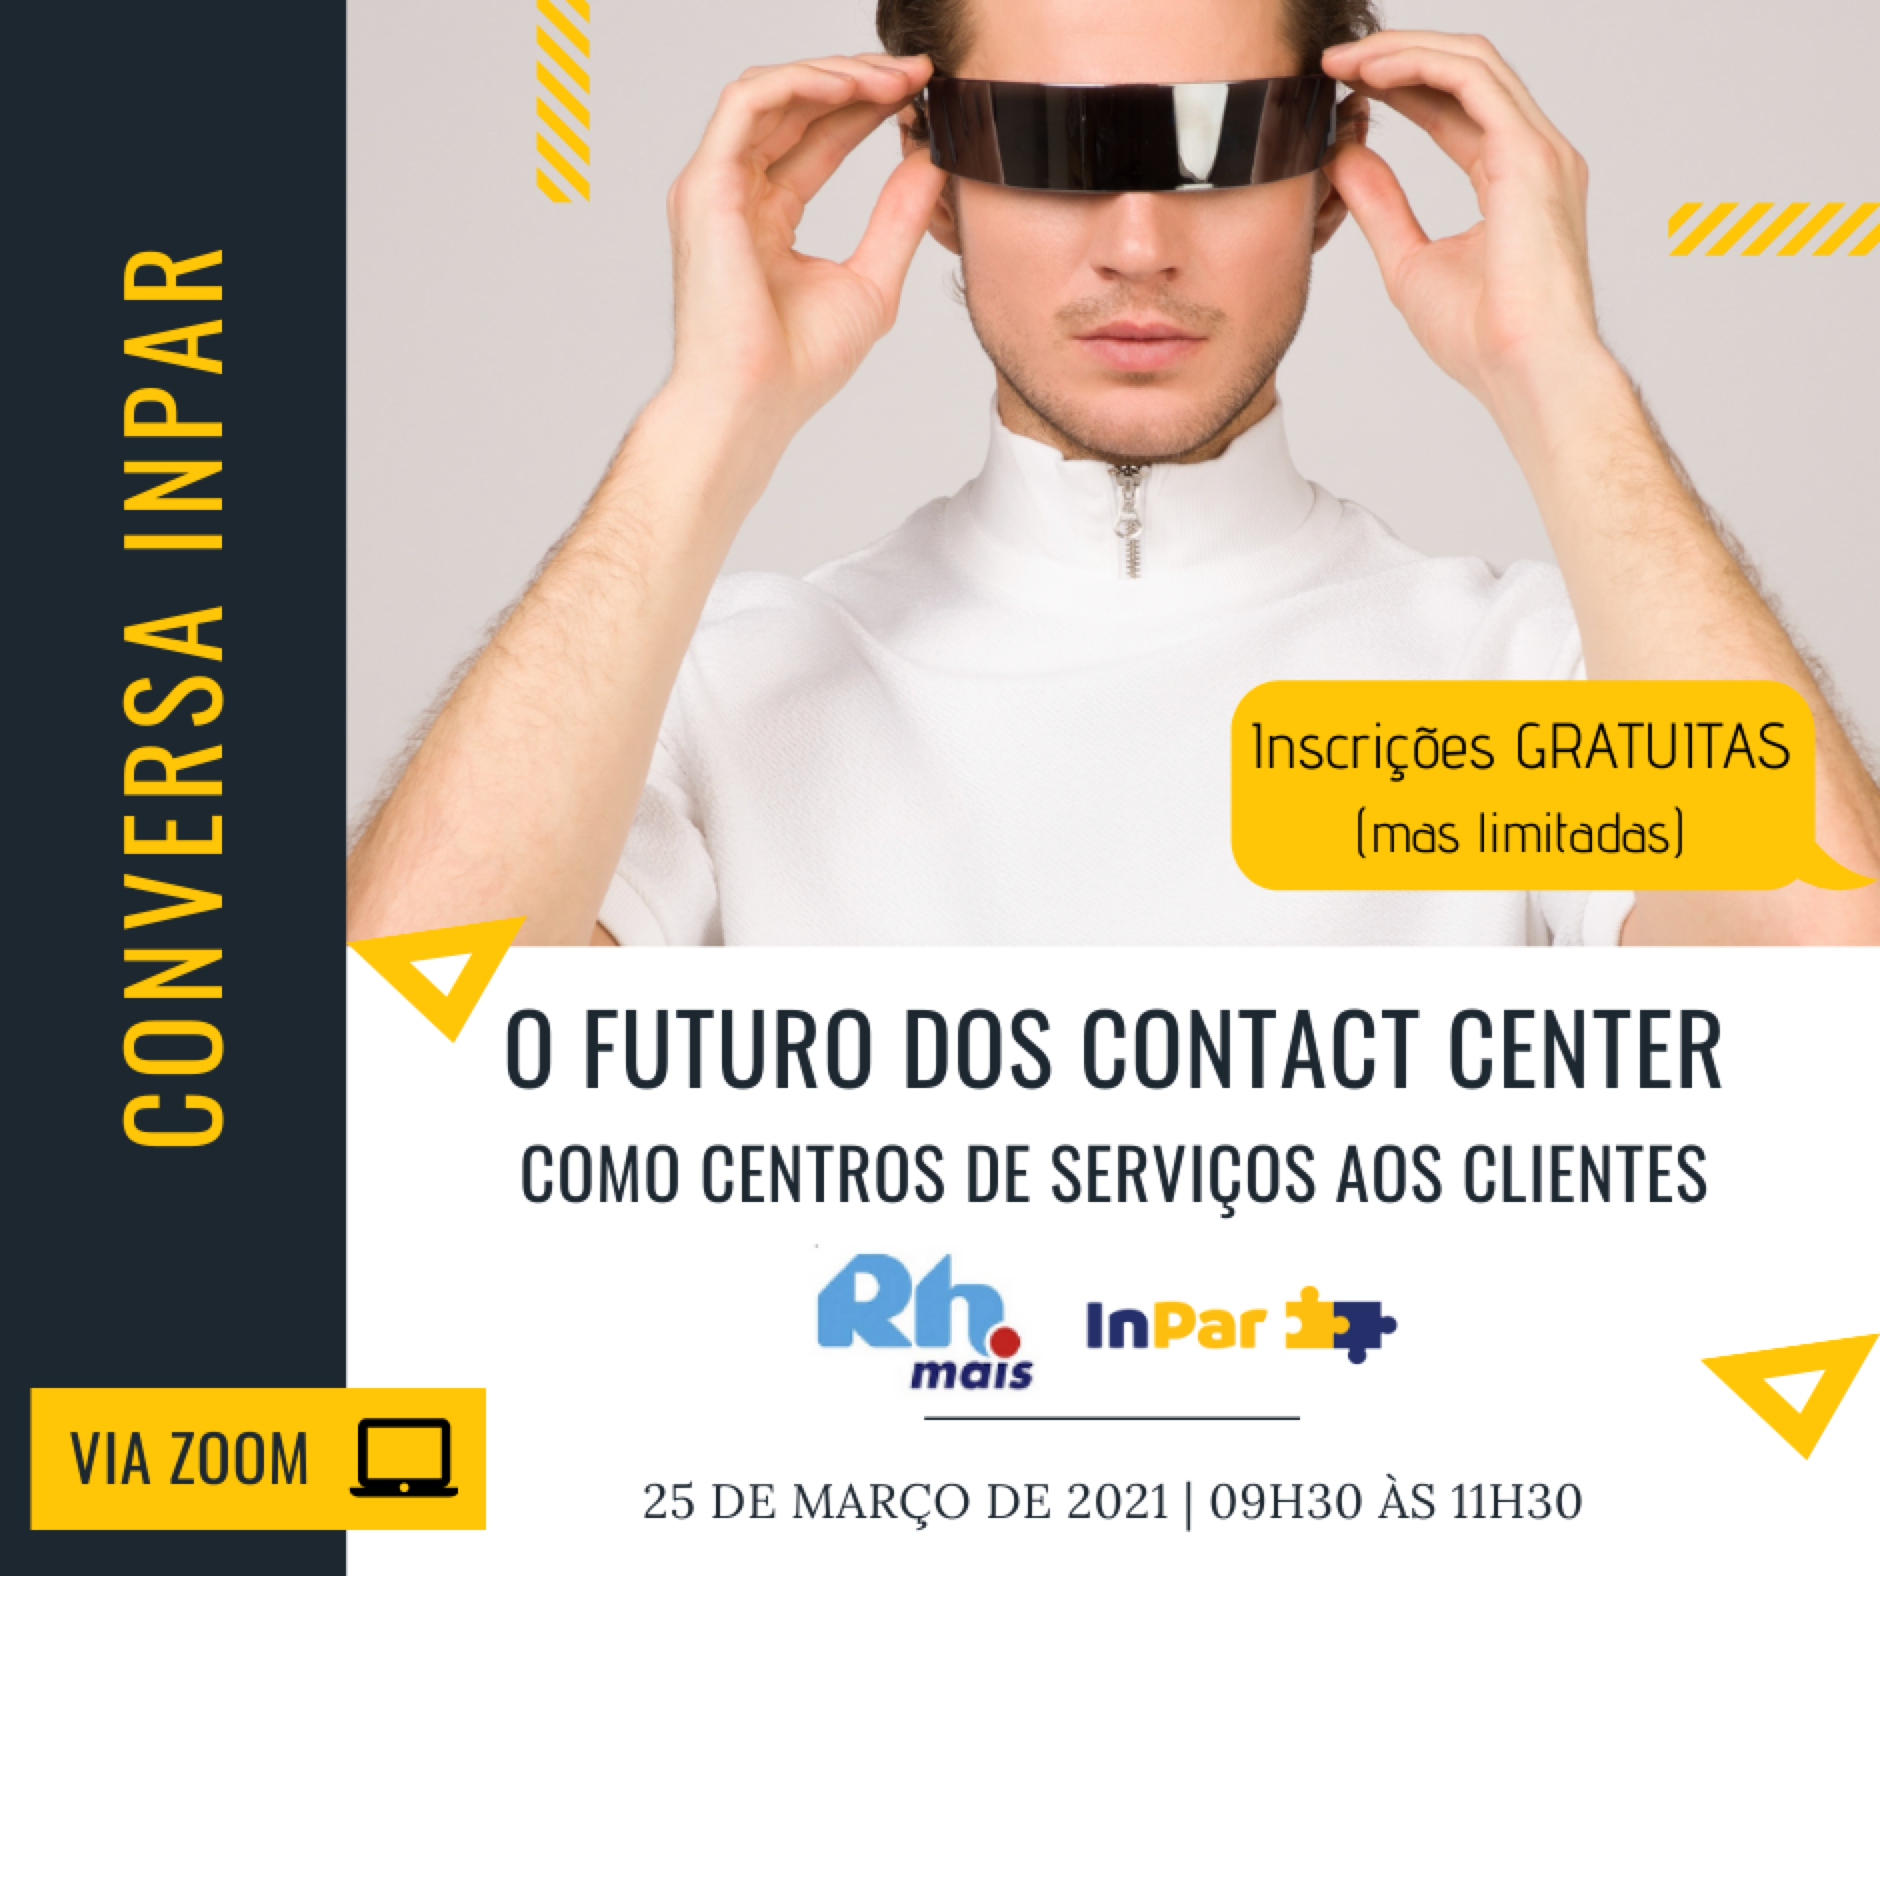 O Futuro dos Contact Center